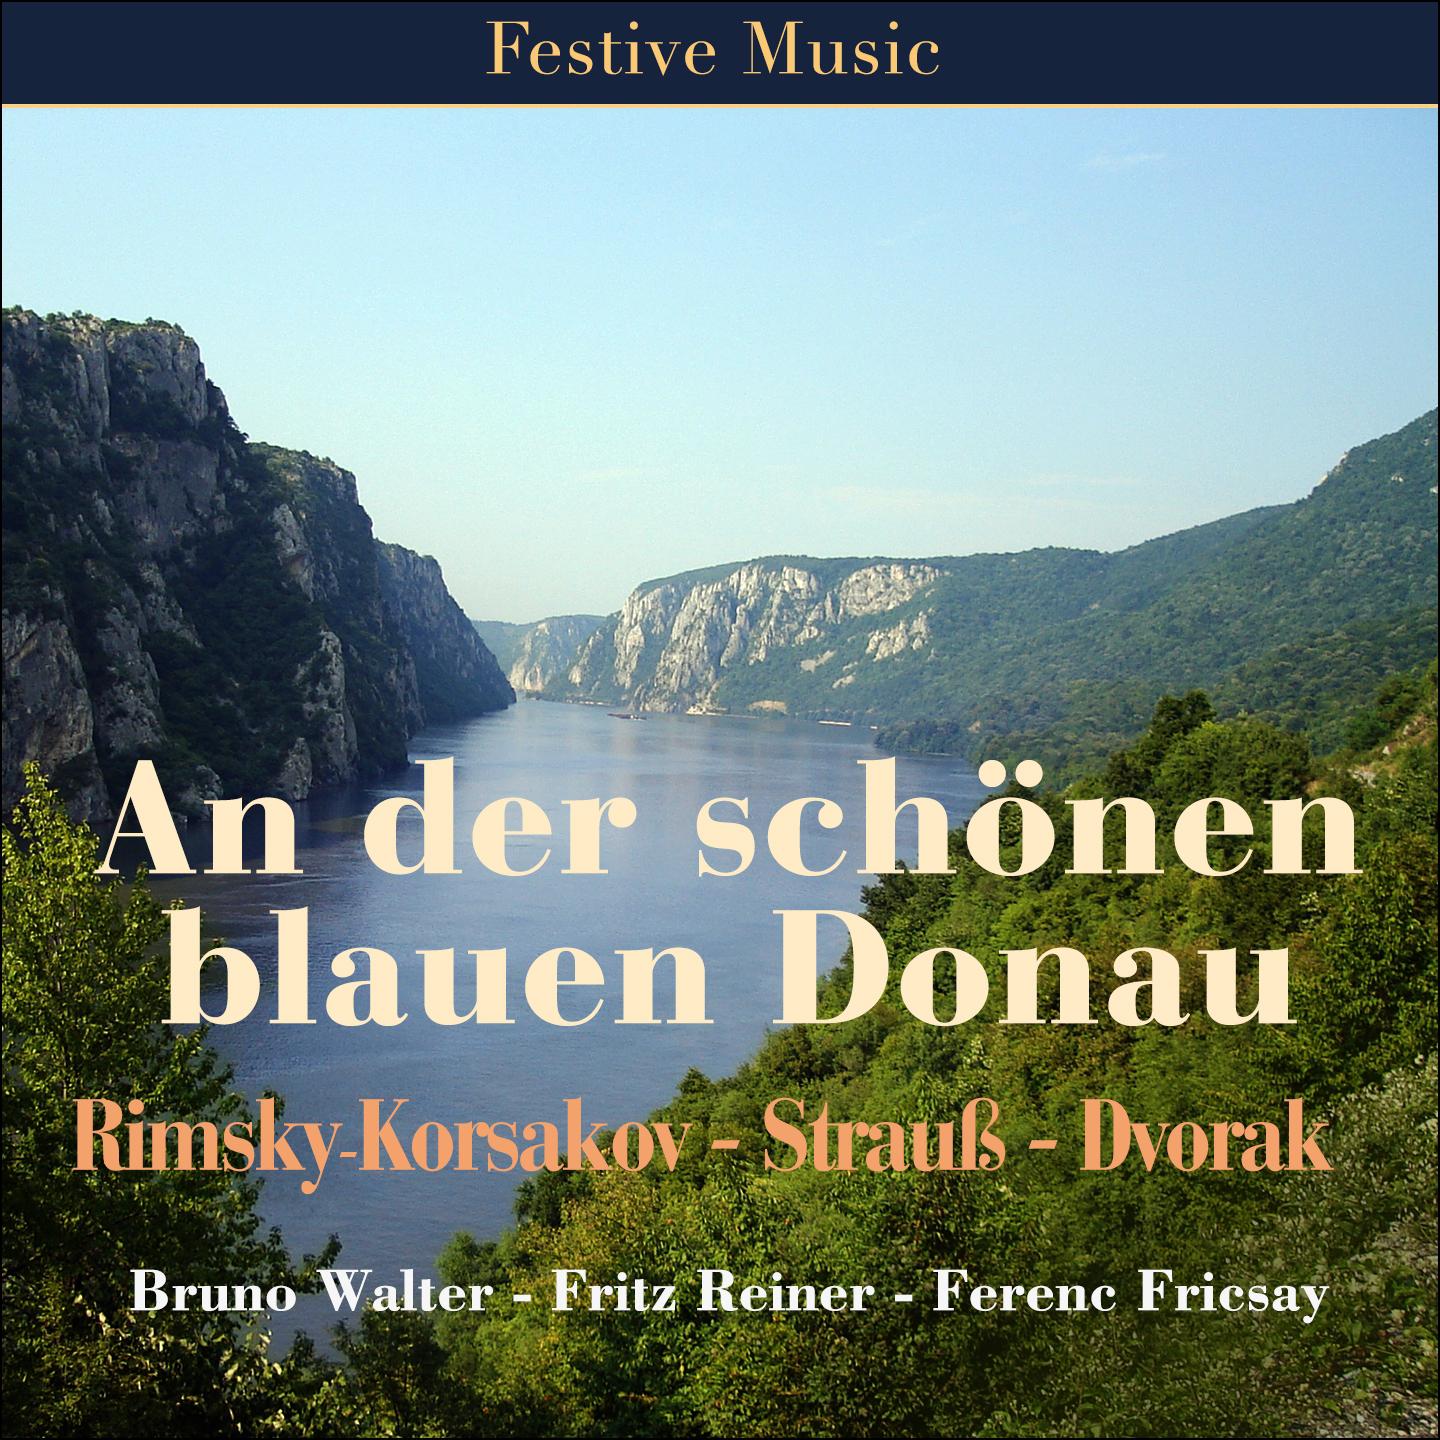 Slawische Tänze, Op. 72, B. 147: No. 2 in E Minor, Dumka